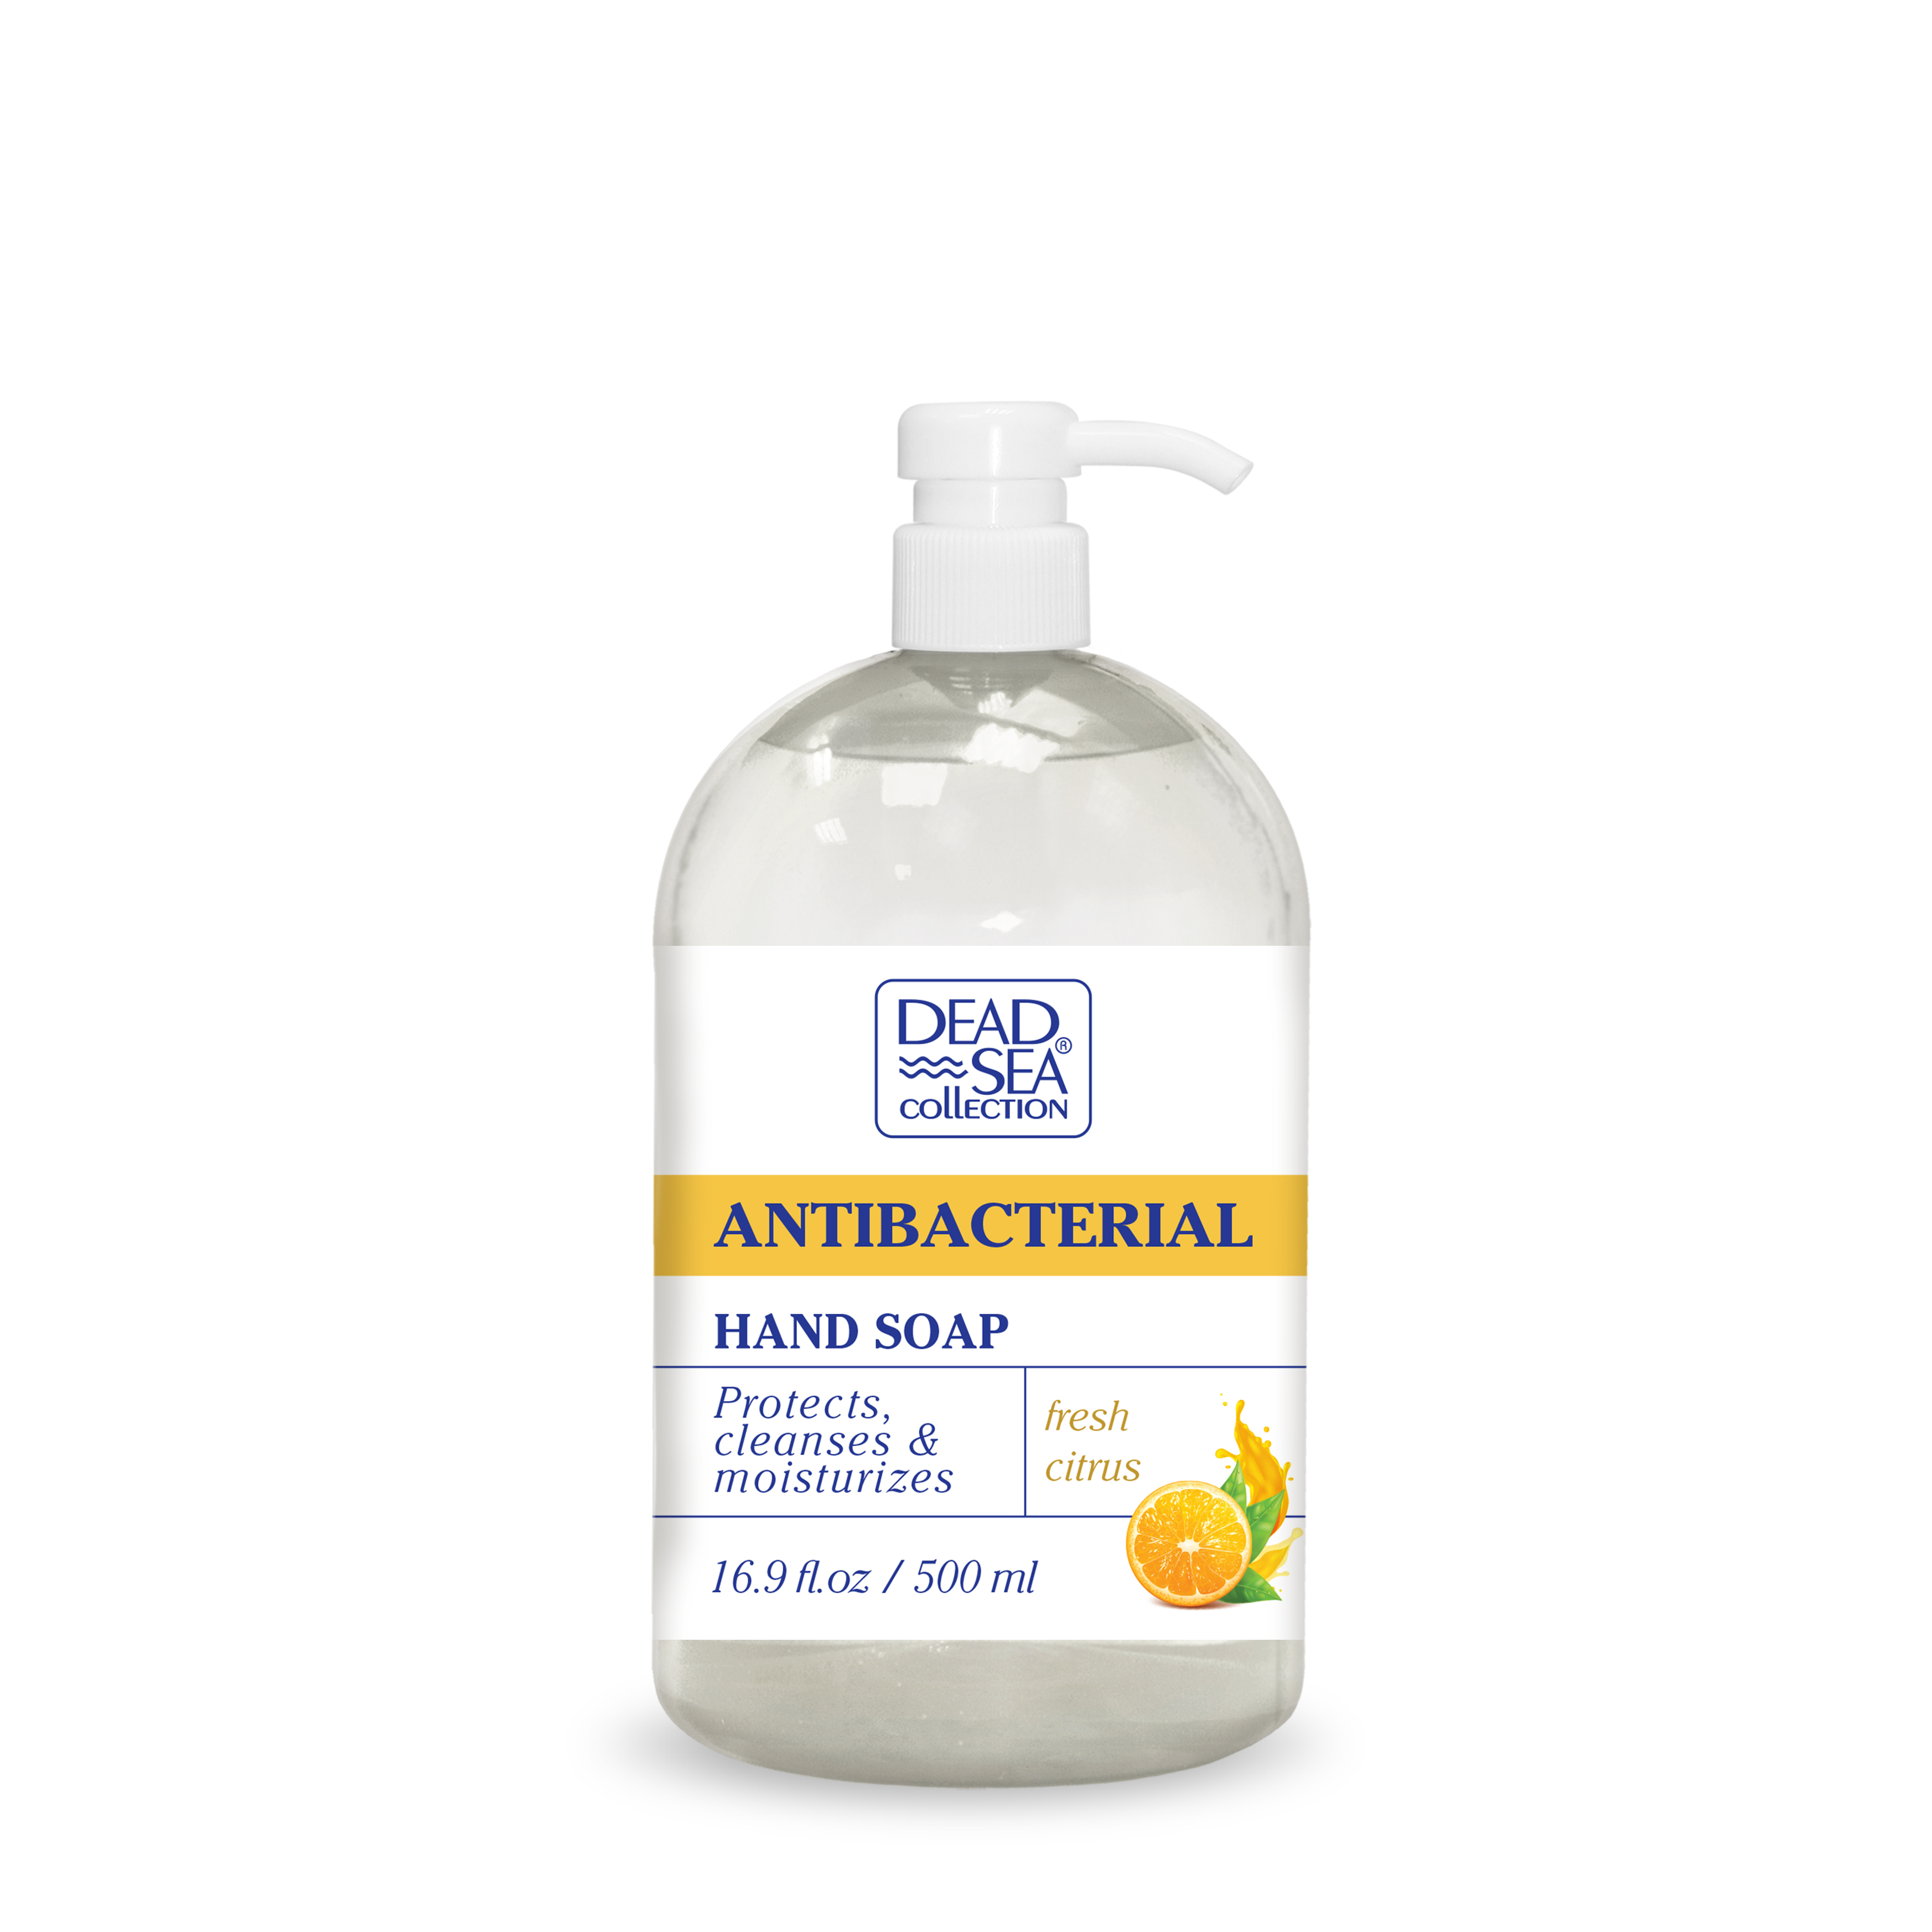 Антибактериальное жидкое мыло Dead Sea Collection с ароматом апельсина, 500 мл - фото 1